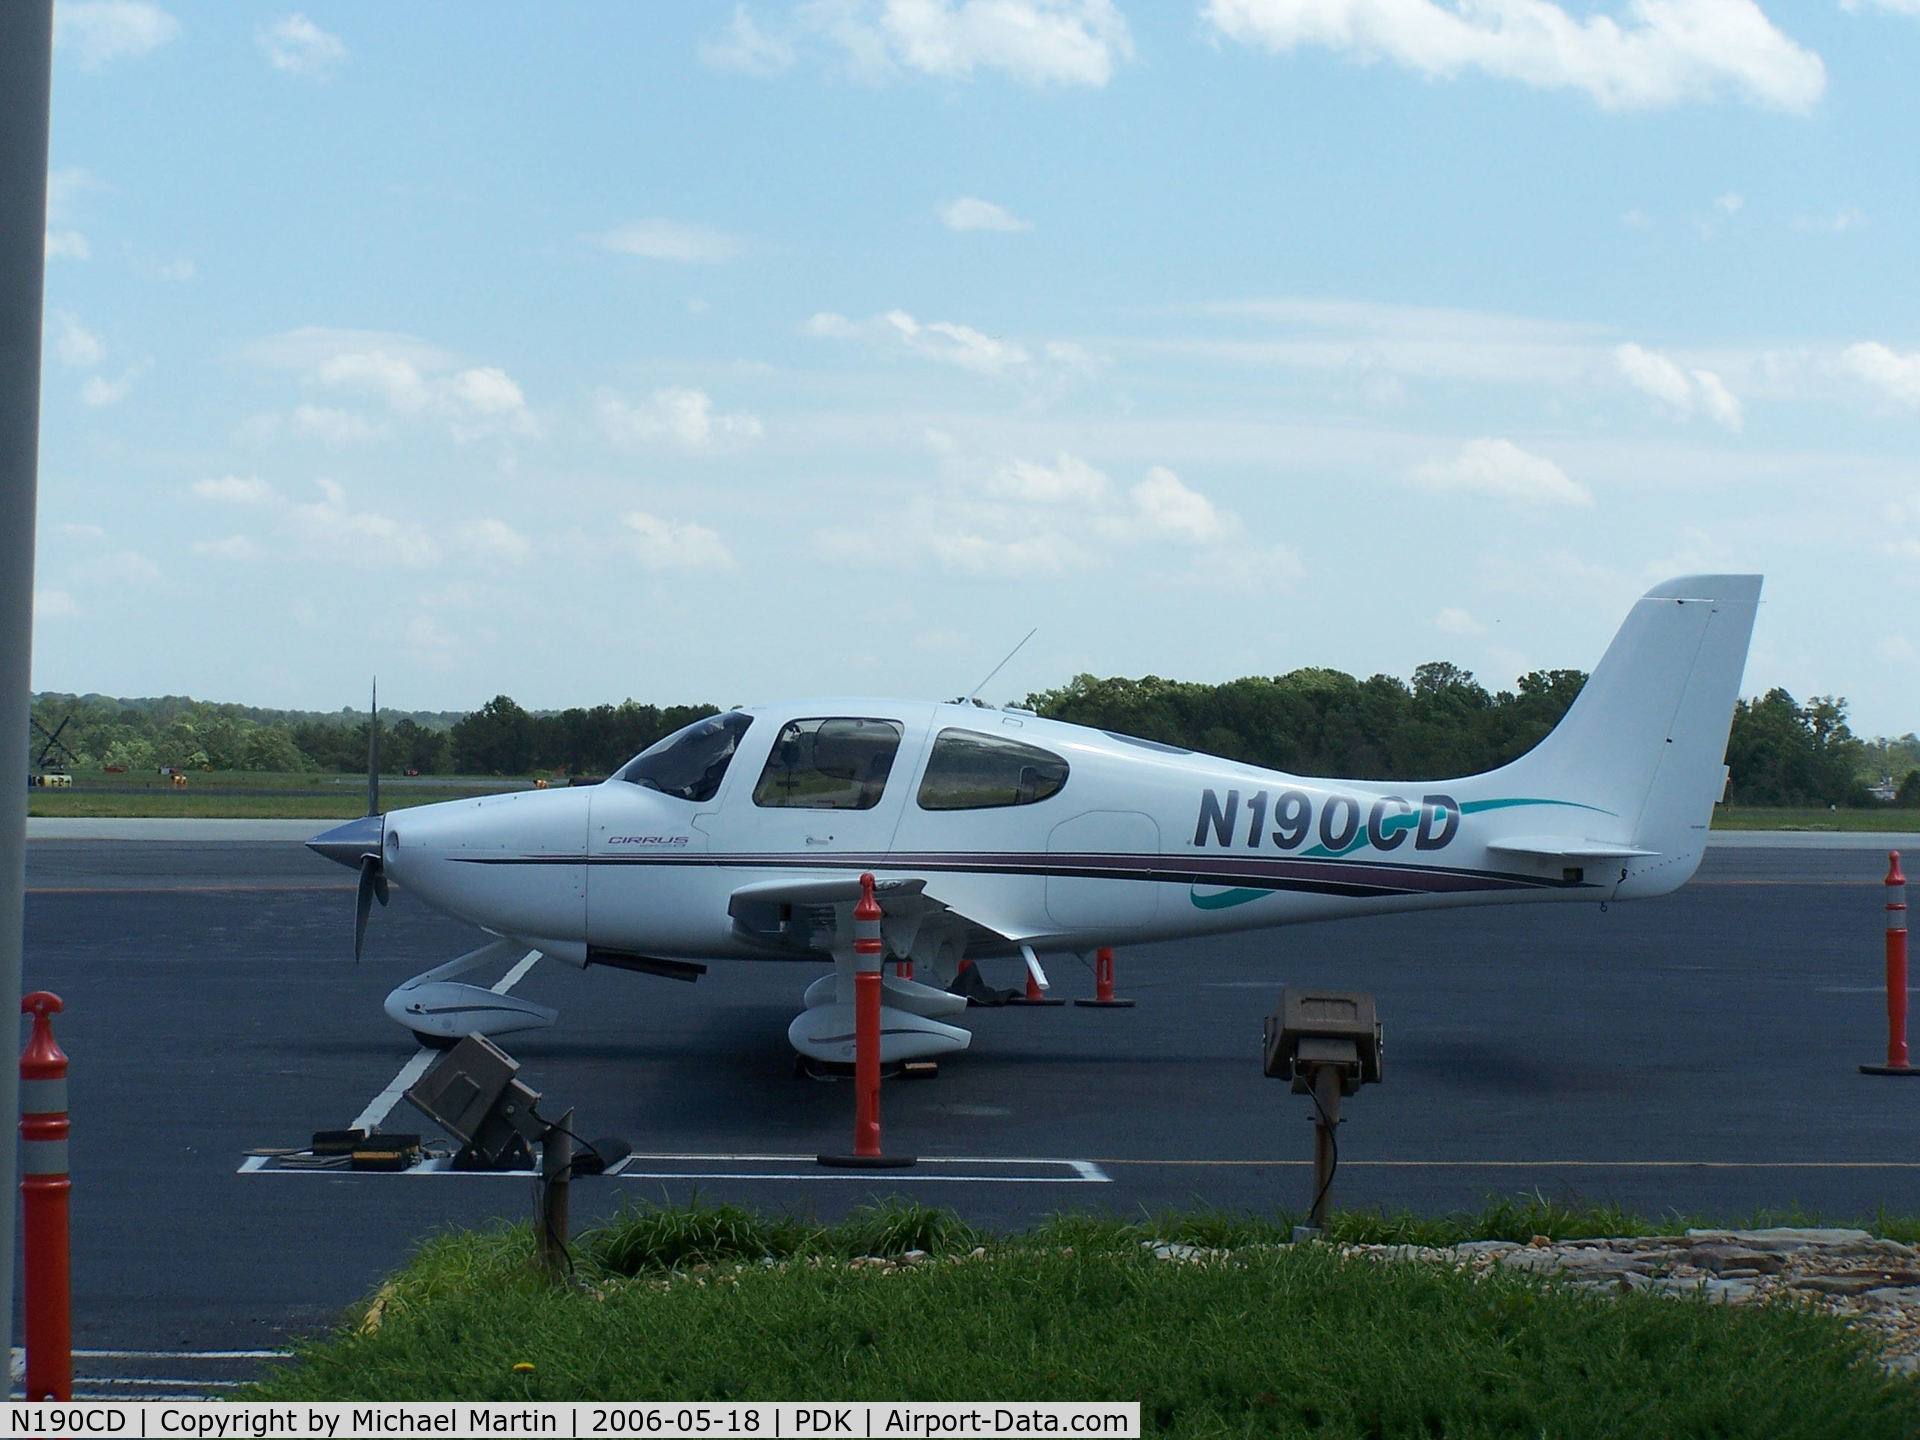 N190CD, 2000 Cirrus SR20 C/N 1099, Tied down @ Mercury Air Center